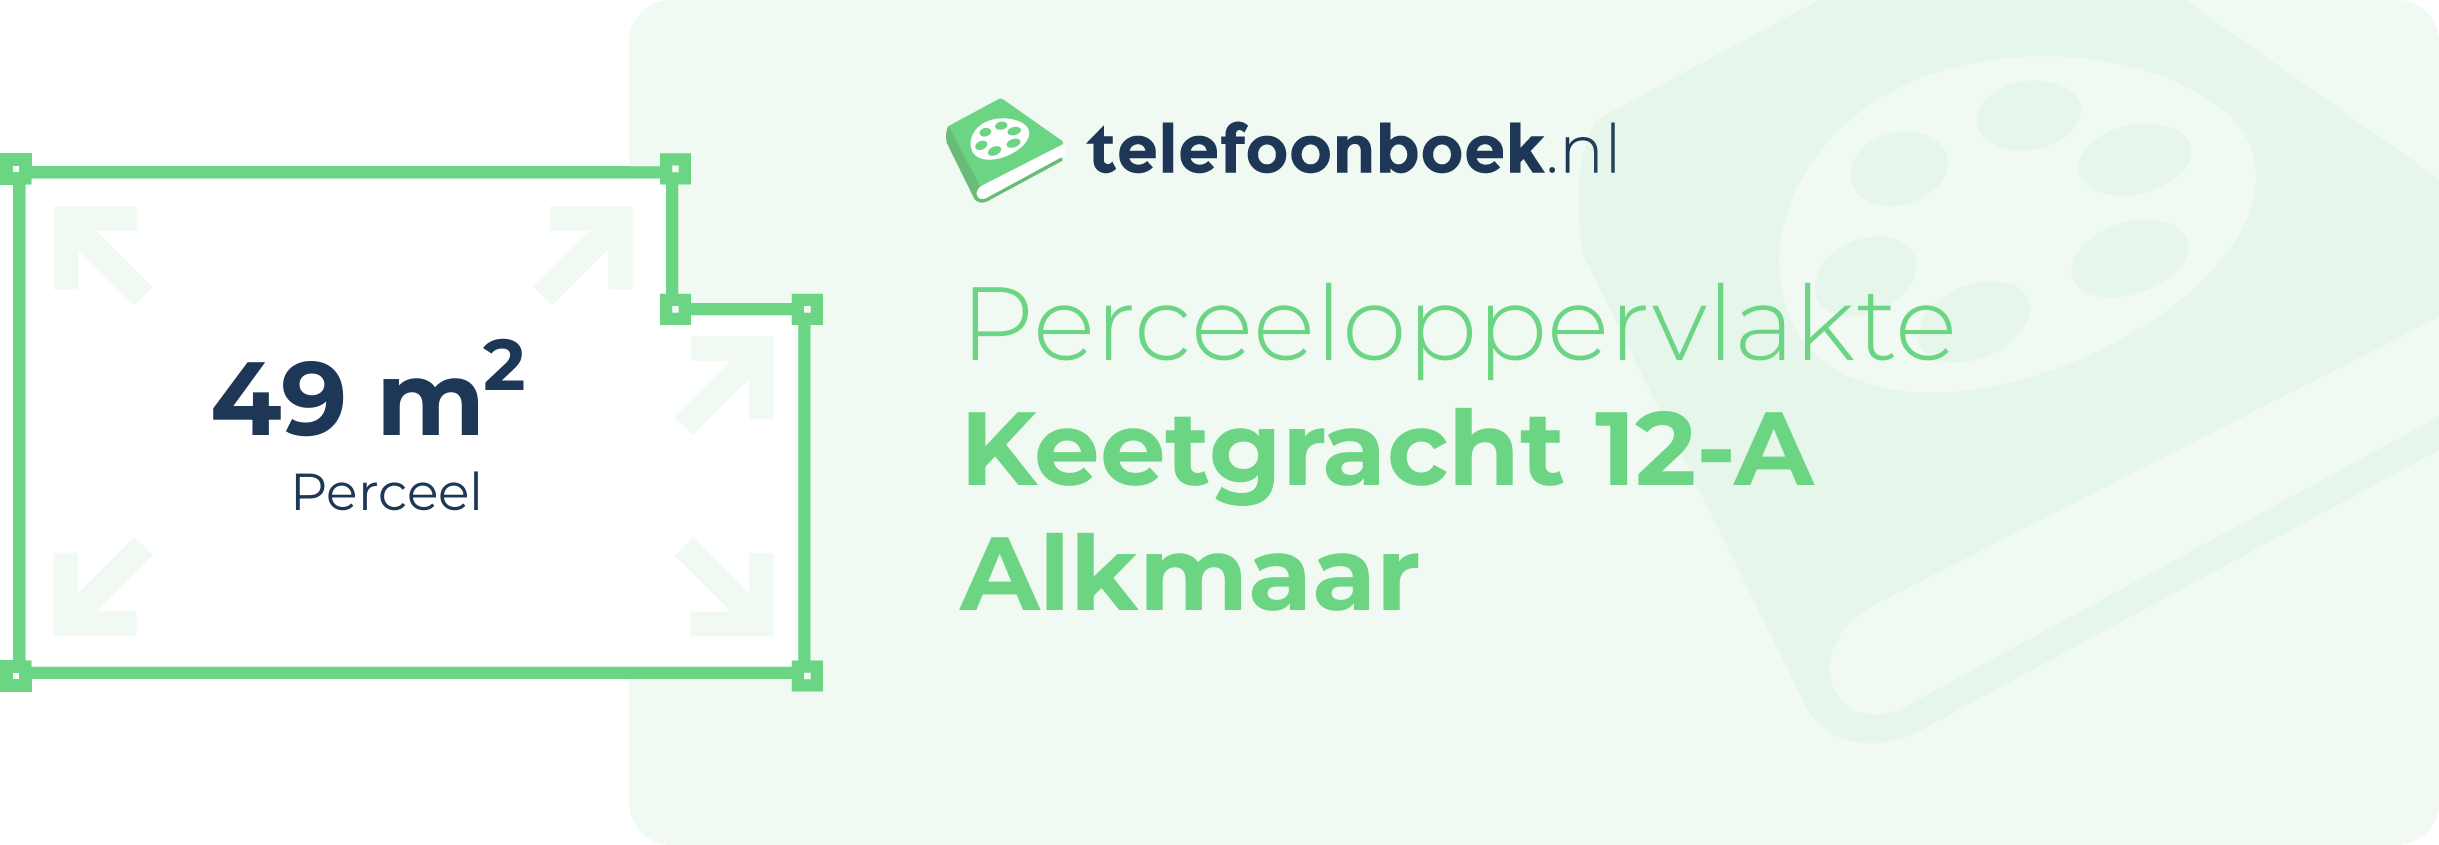 Perceeloppervlakte Keetgracht 12-A Alkmaar